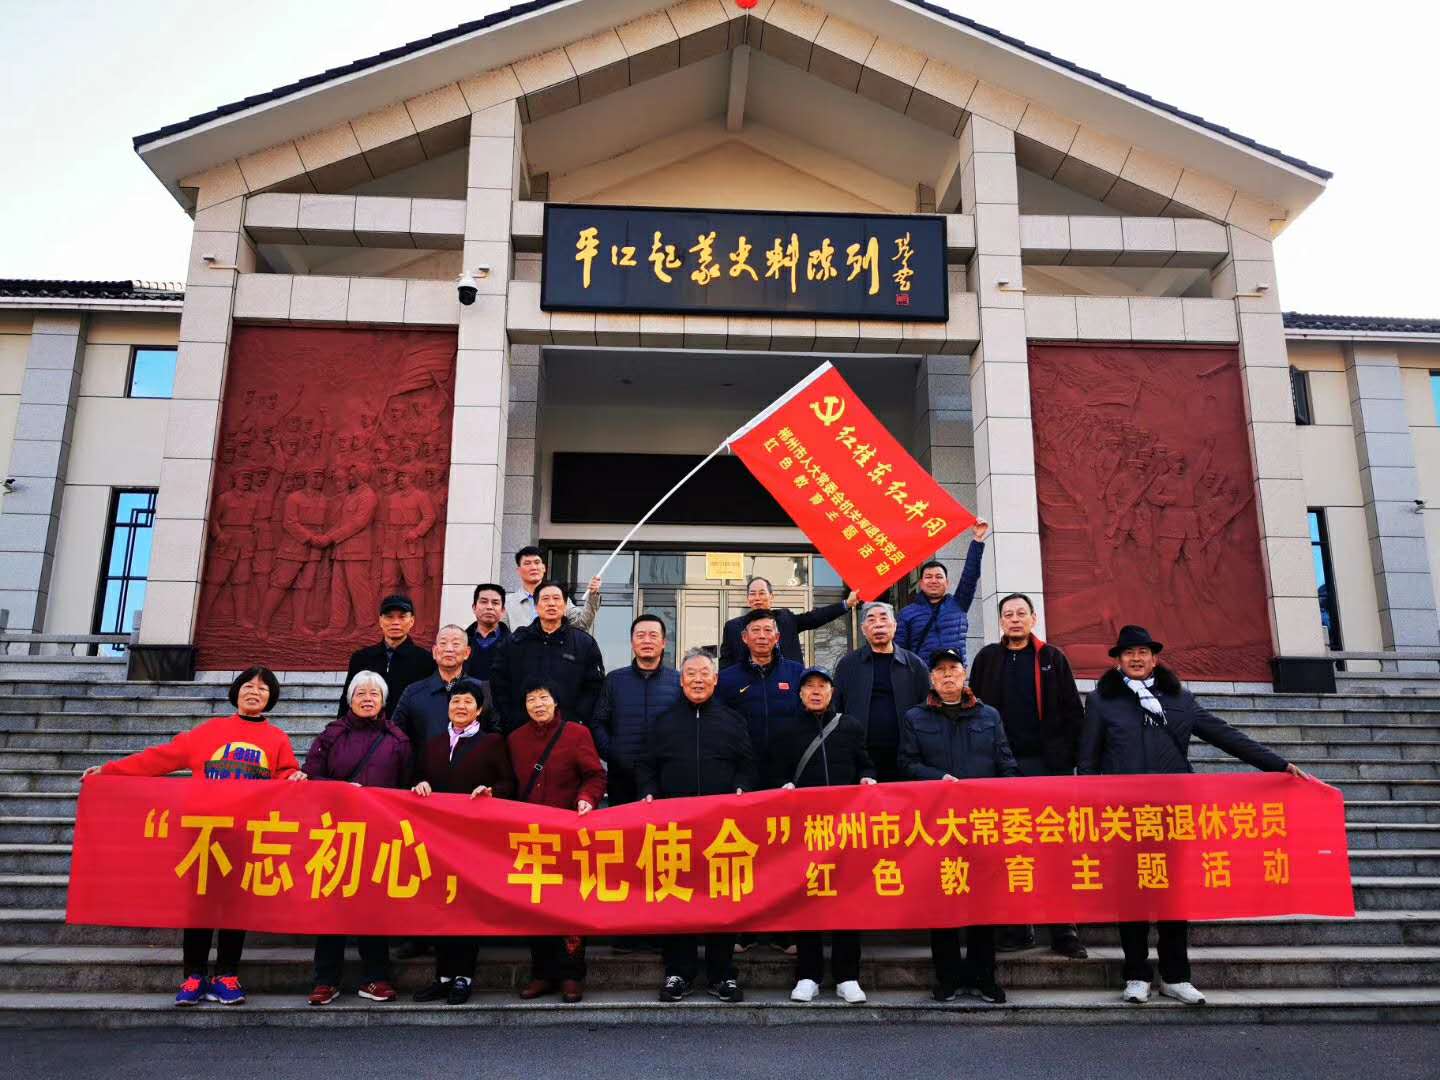 12月11-13日郴州市人大常委會機關離退休黨員”響應習大大的“不忘初心·牢記使命”的革命精神紅色教育活動